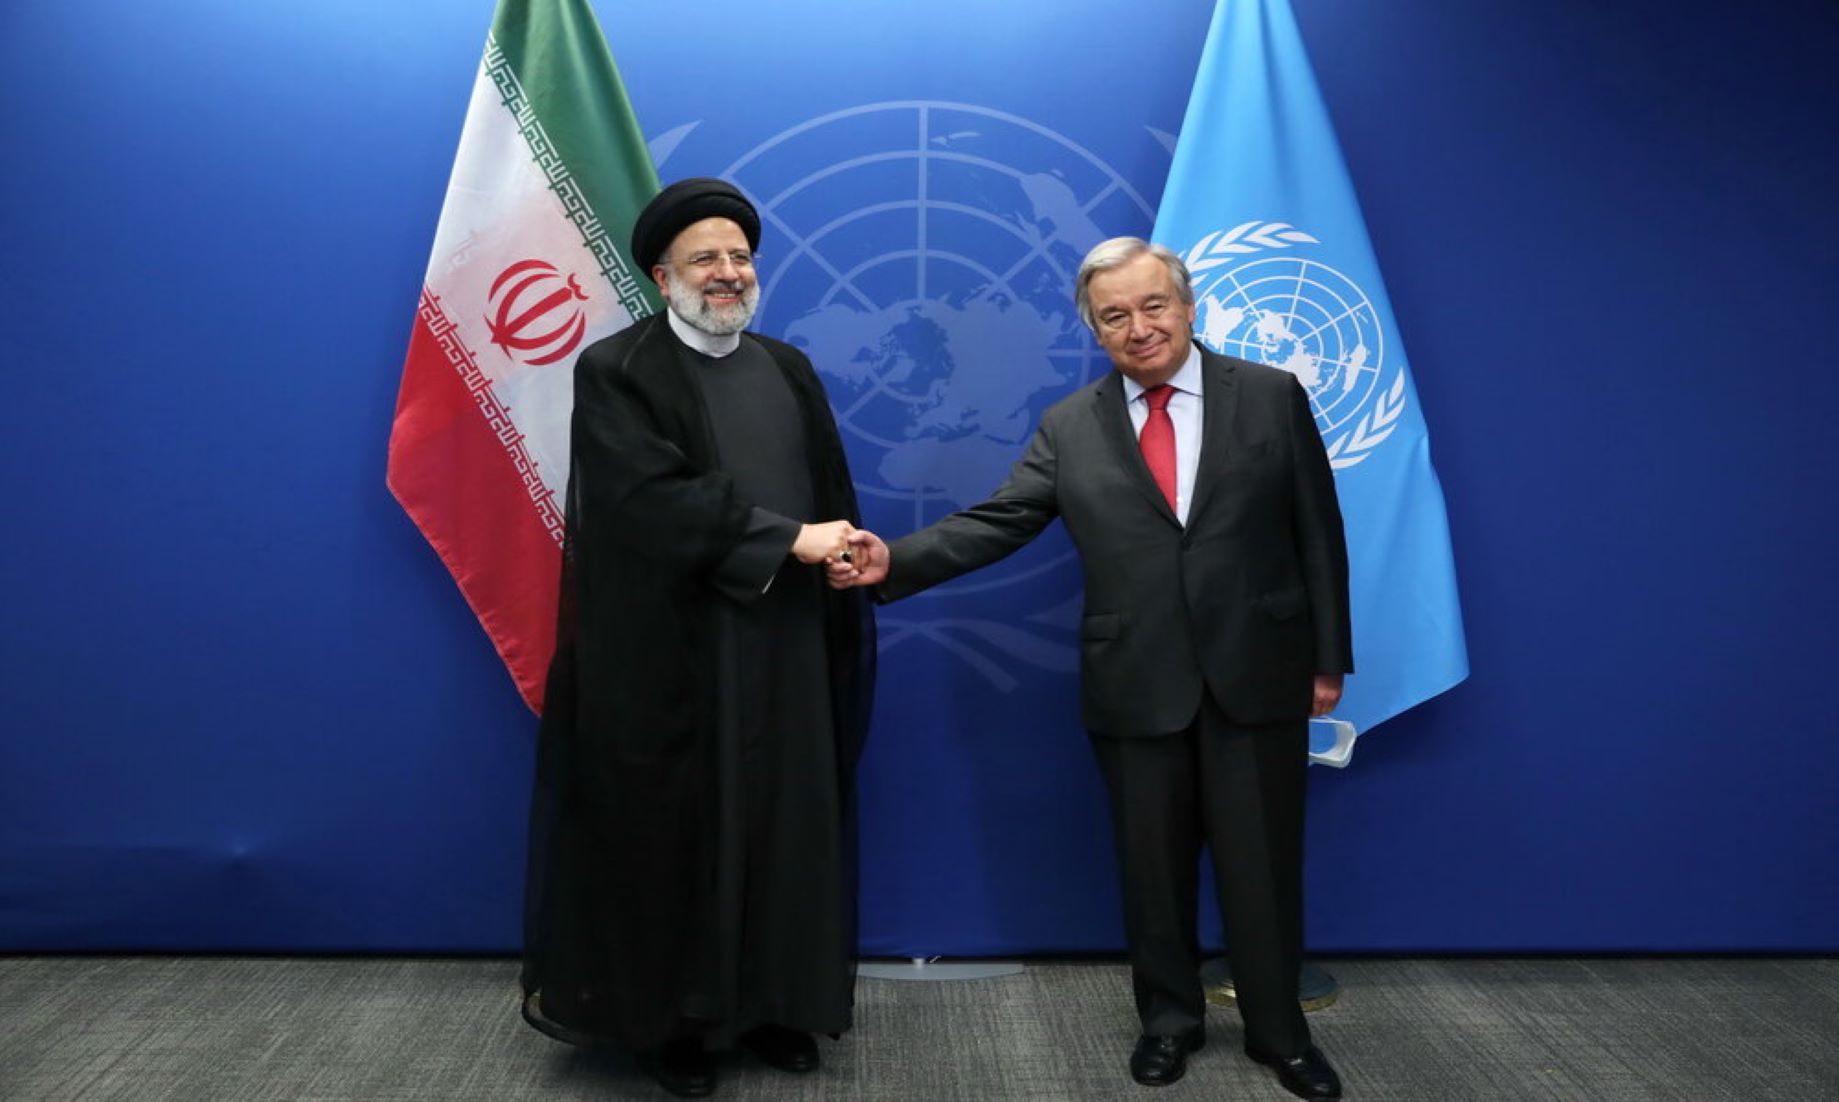 “Destruction, Massacre” Outcomes Of U.S., NATO Presence In Region: Iranian President